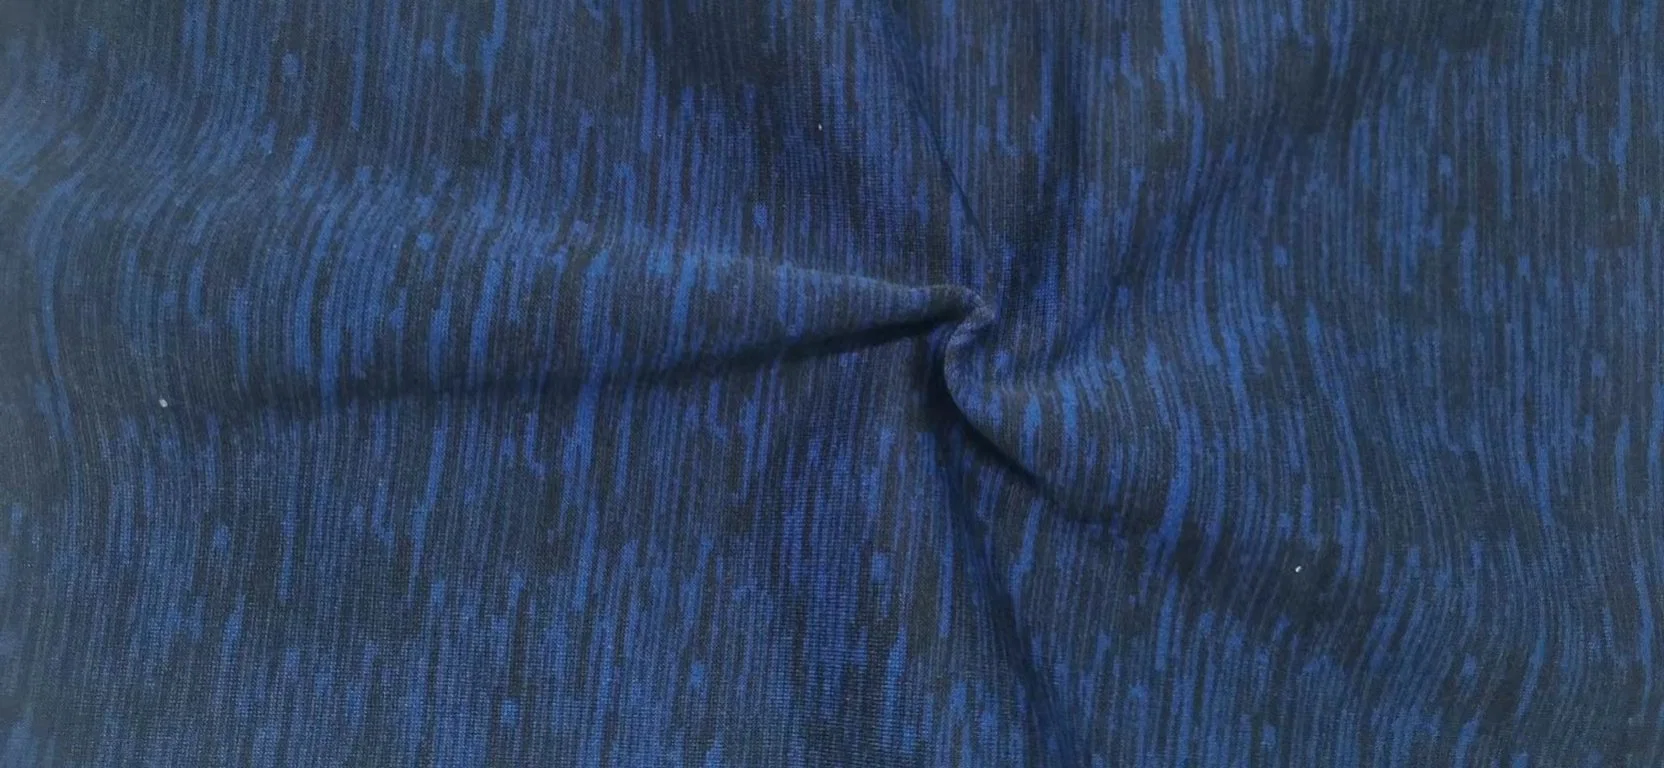 فرشاة جانبية مفردة من قماش البوليستر، من قماش Fleece، تقنية Telas Terry Fleece قماش الملابس الرياضية المصنوعة من بطانة الطلاء المطبوعة ببطانة الطلاء المطبوعة القماش